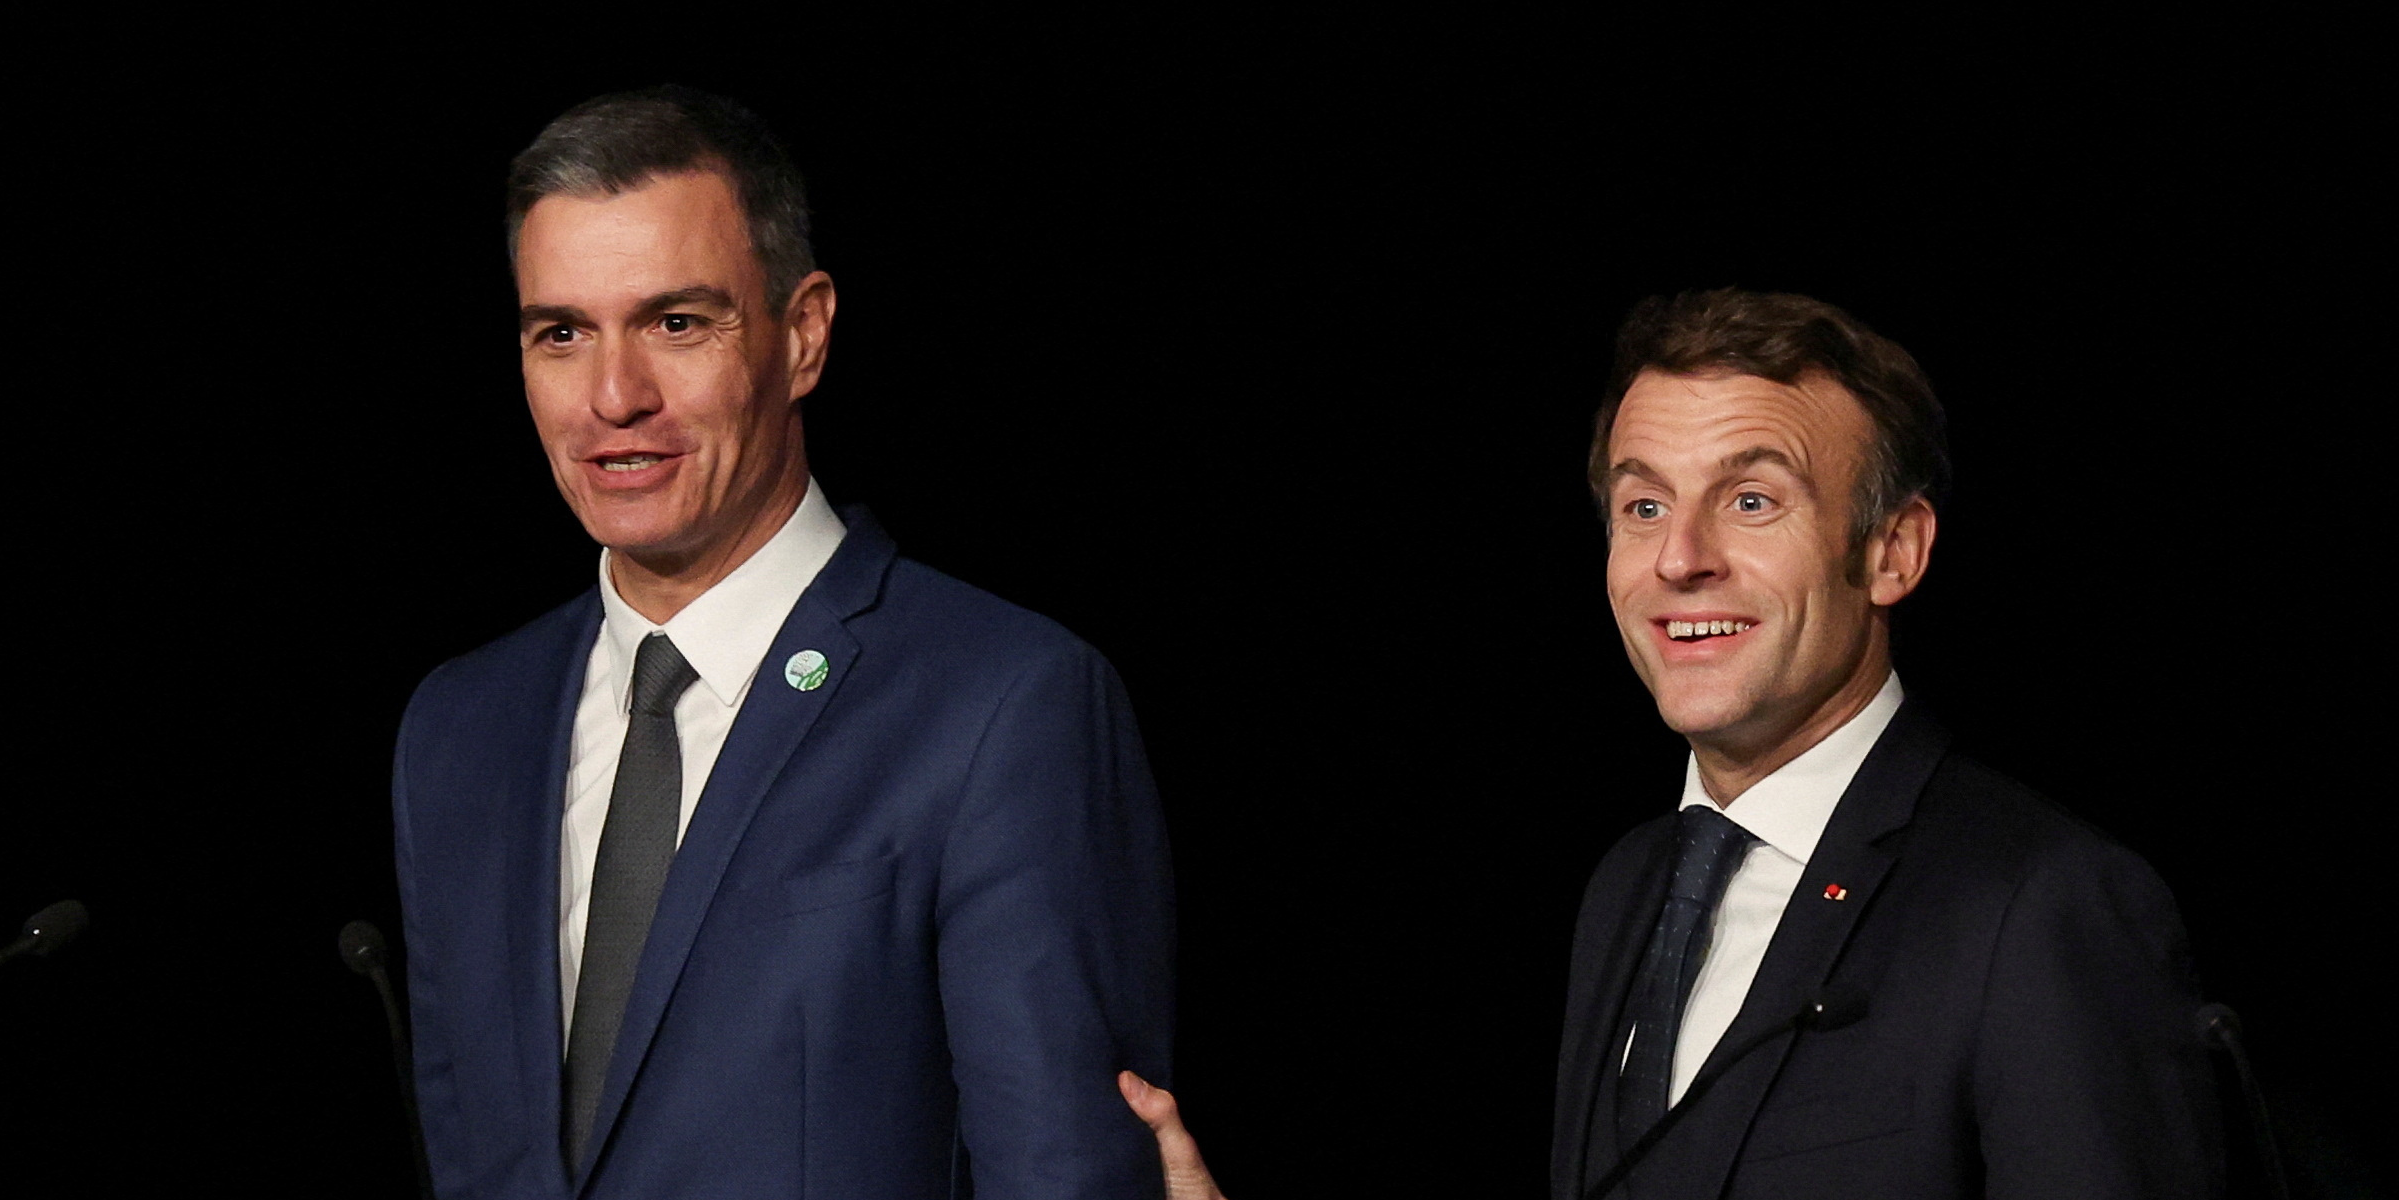 La France et l'Espagne renforcent leurs relations pour mieux défendre leur vision de l'Europe